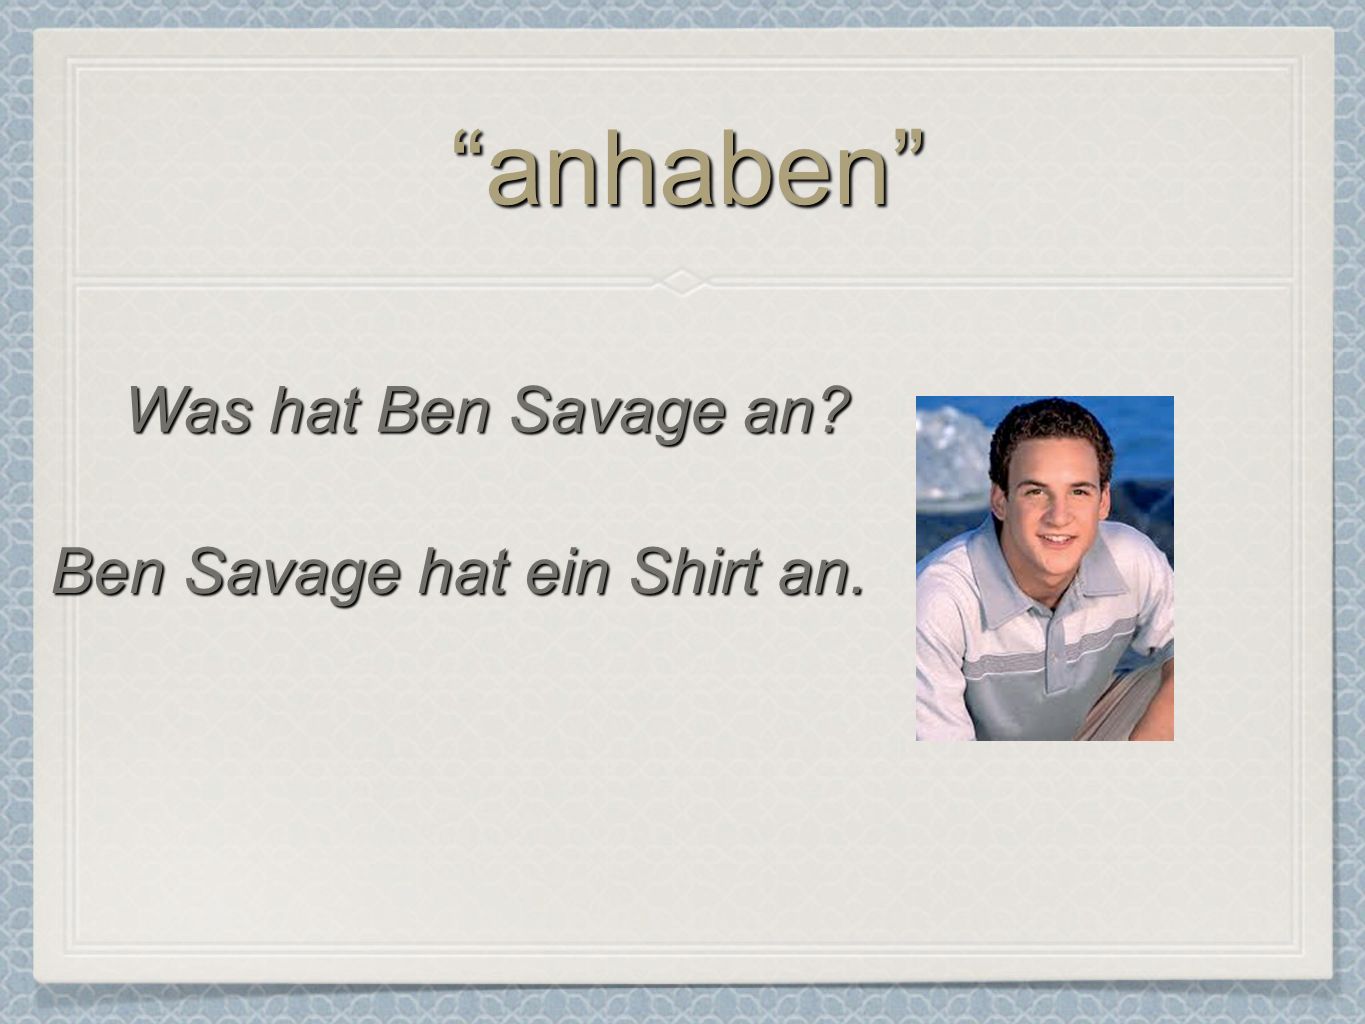 Ben Savage hat ein Shirt an.